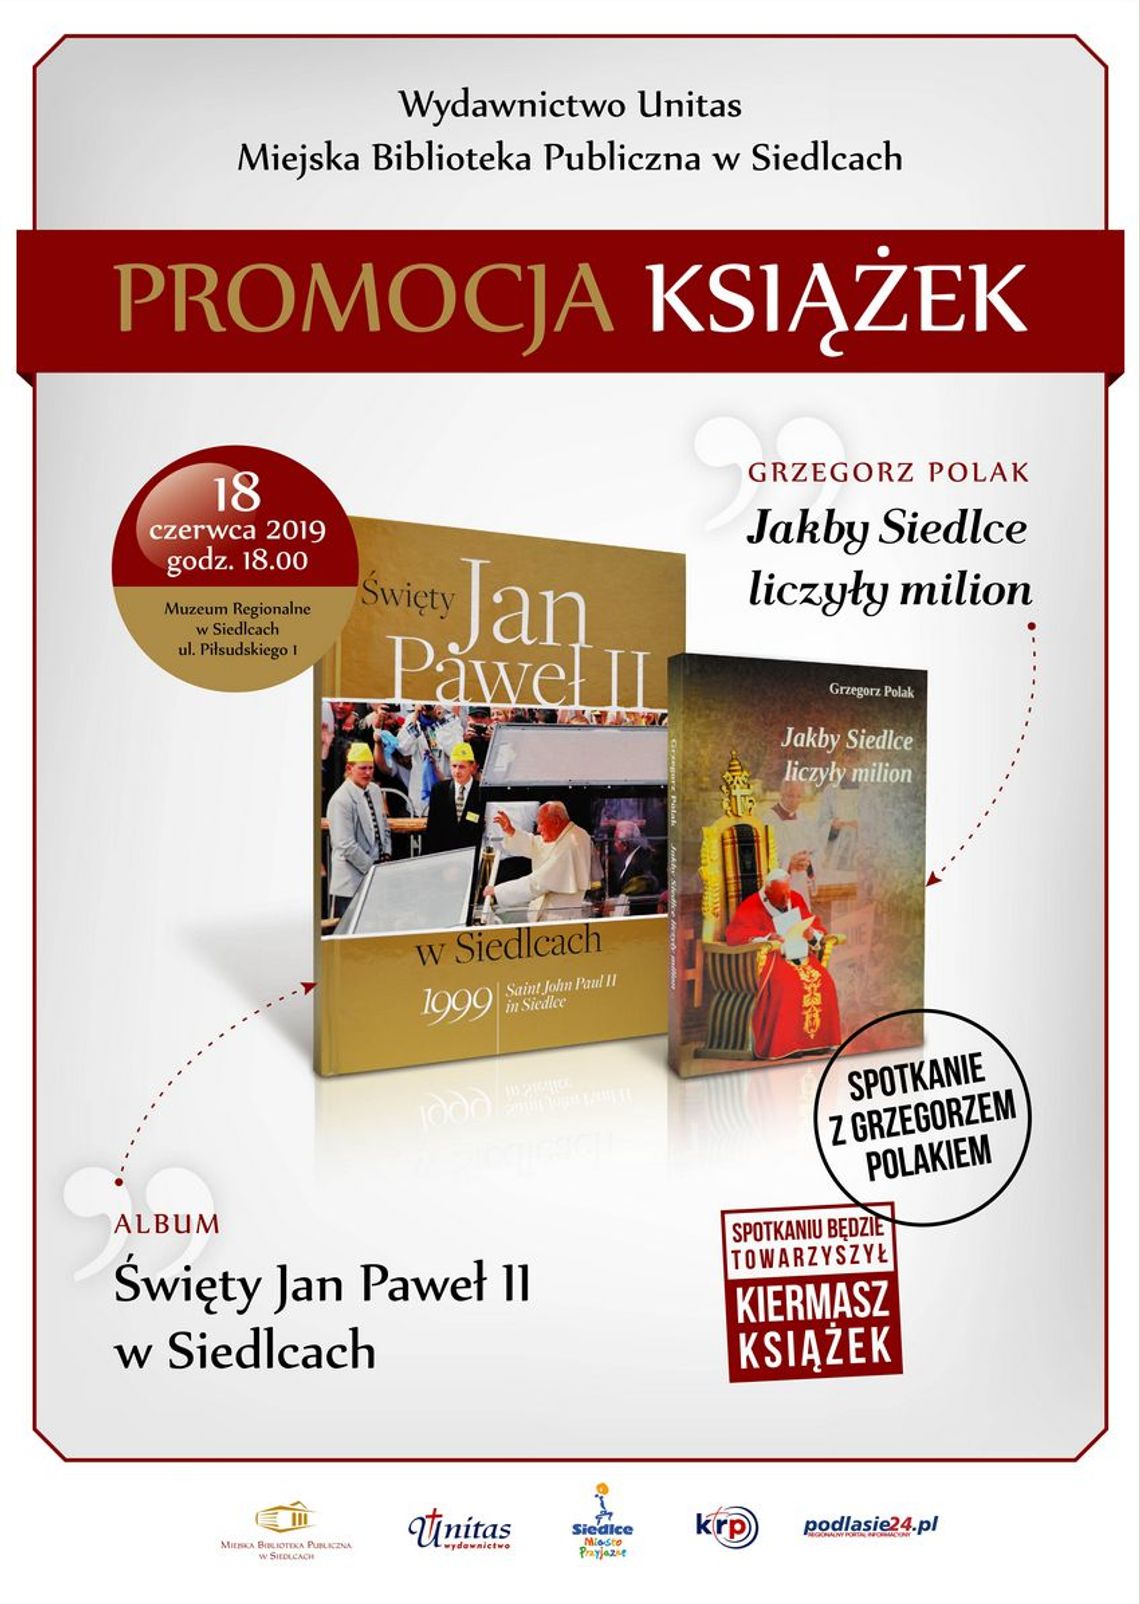 Promocja książek wydanych z okazji 20. rocznicy wizyty Jana Pawła II w Siedlcach